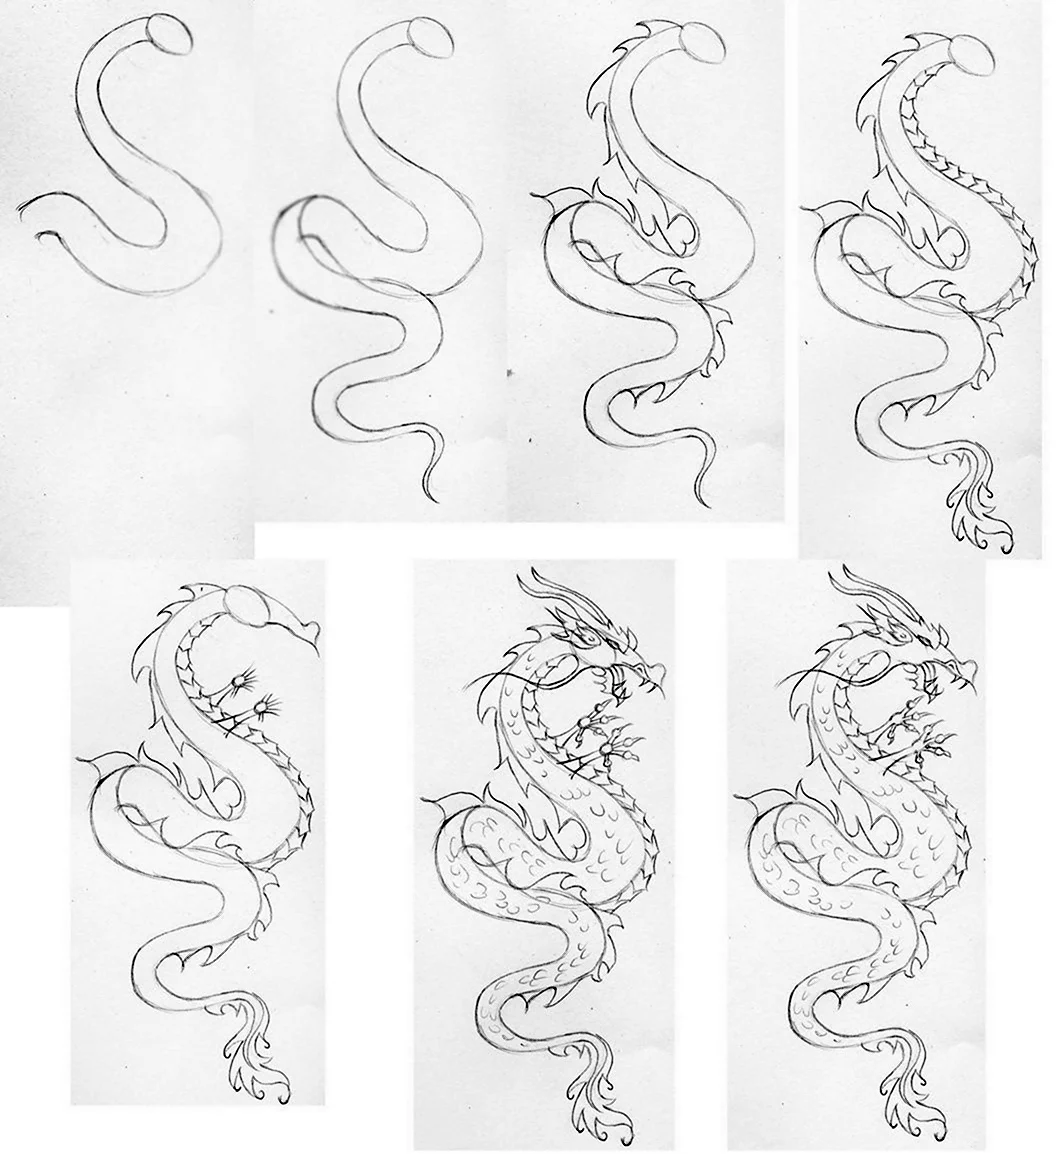 Китайский дракон рисунок карандашом лёгкий. Для срисовки